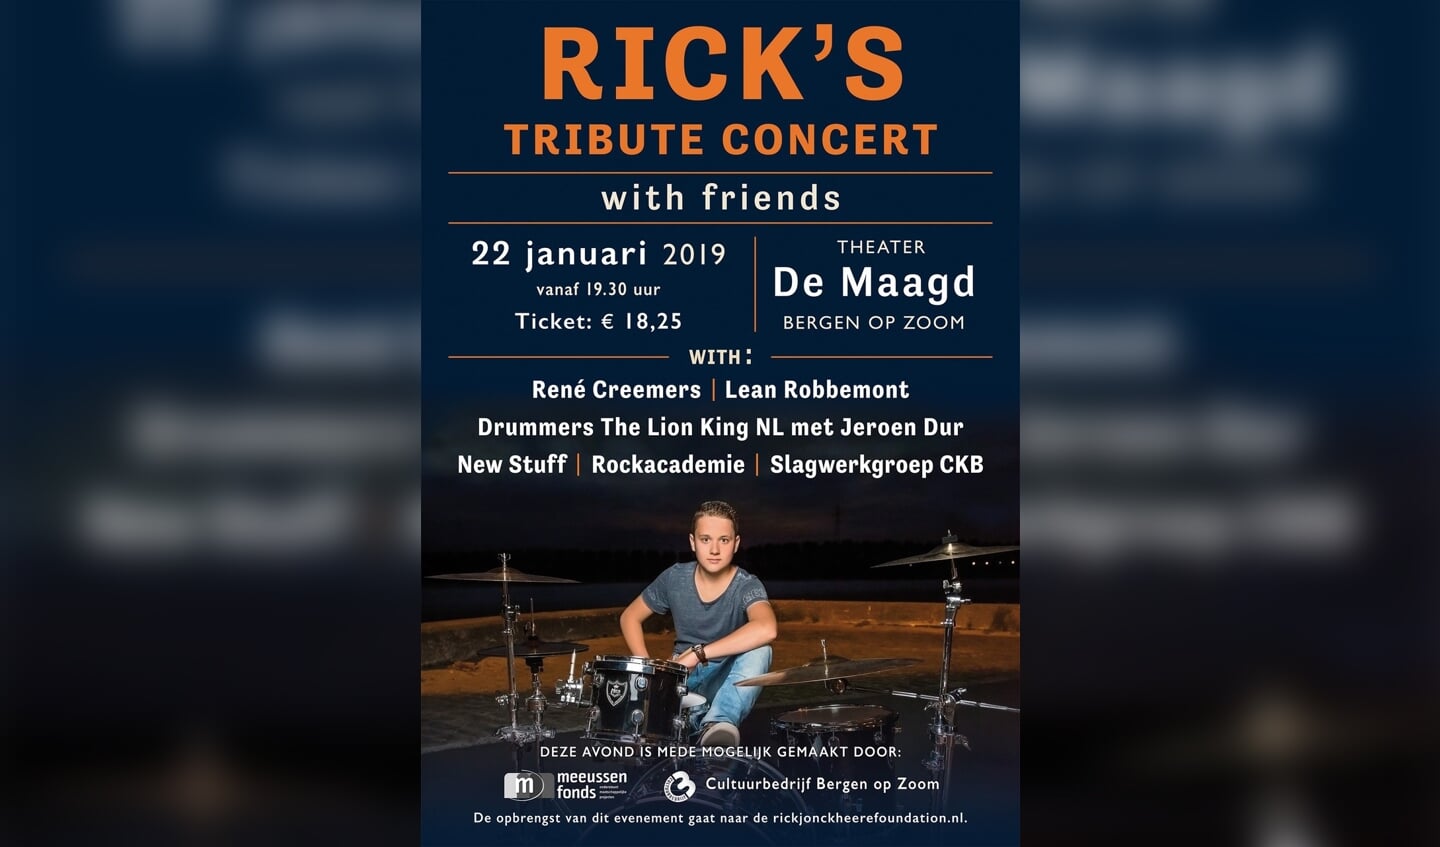 Rick's Tribute Concert vindt plaats op 22 januari 2019.